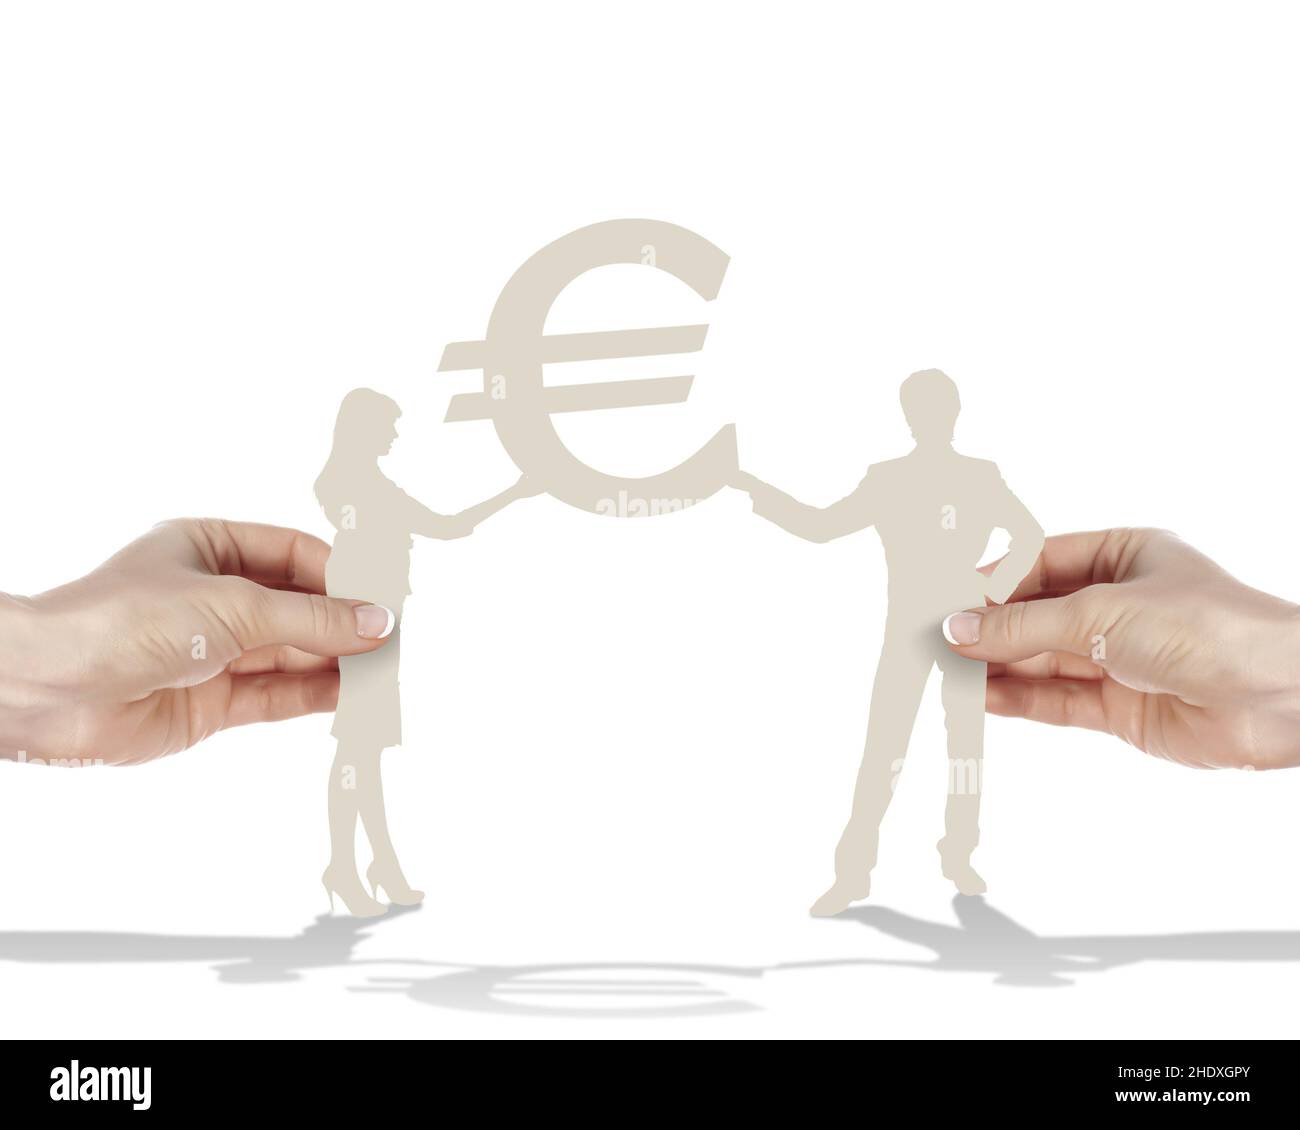 euro, couple, signe euro, couples, signes euro Banque D'Images